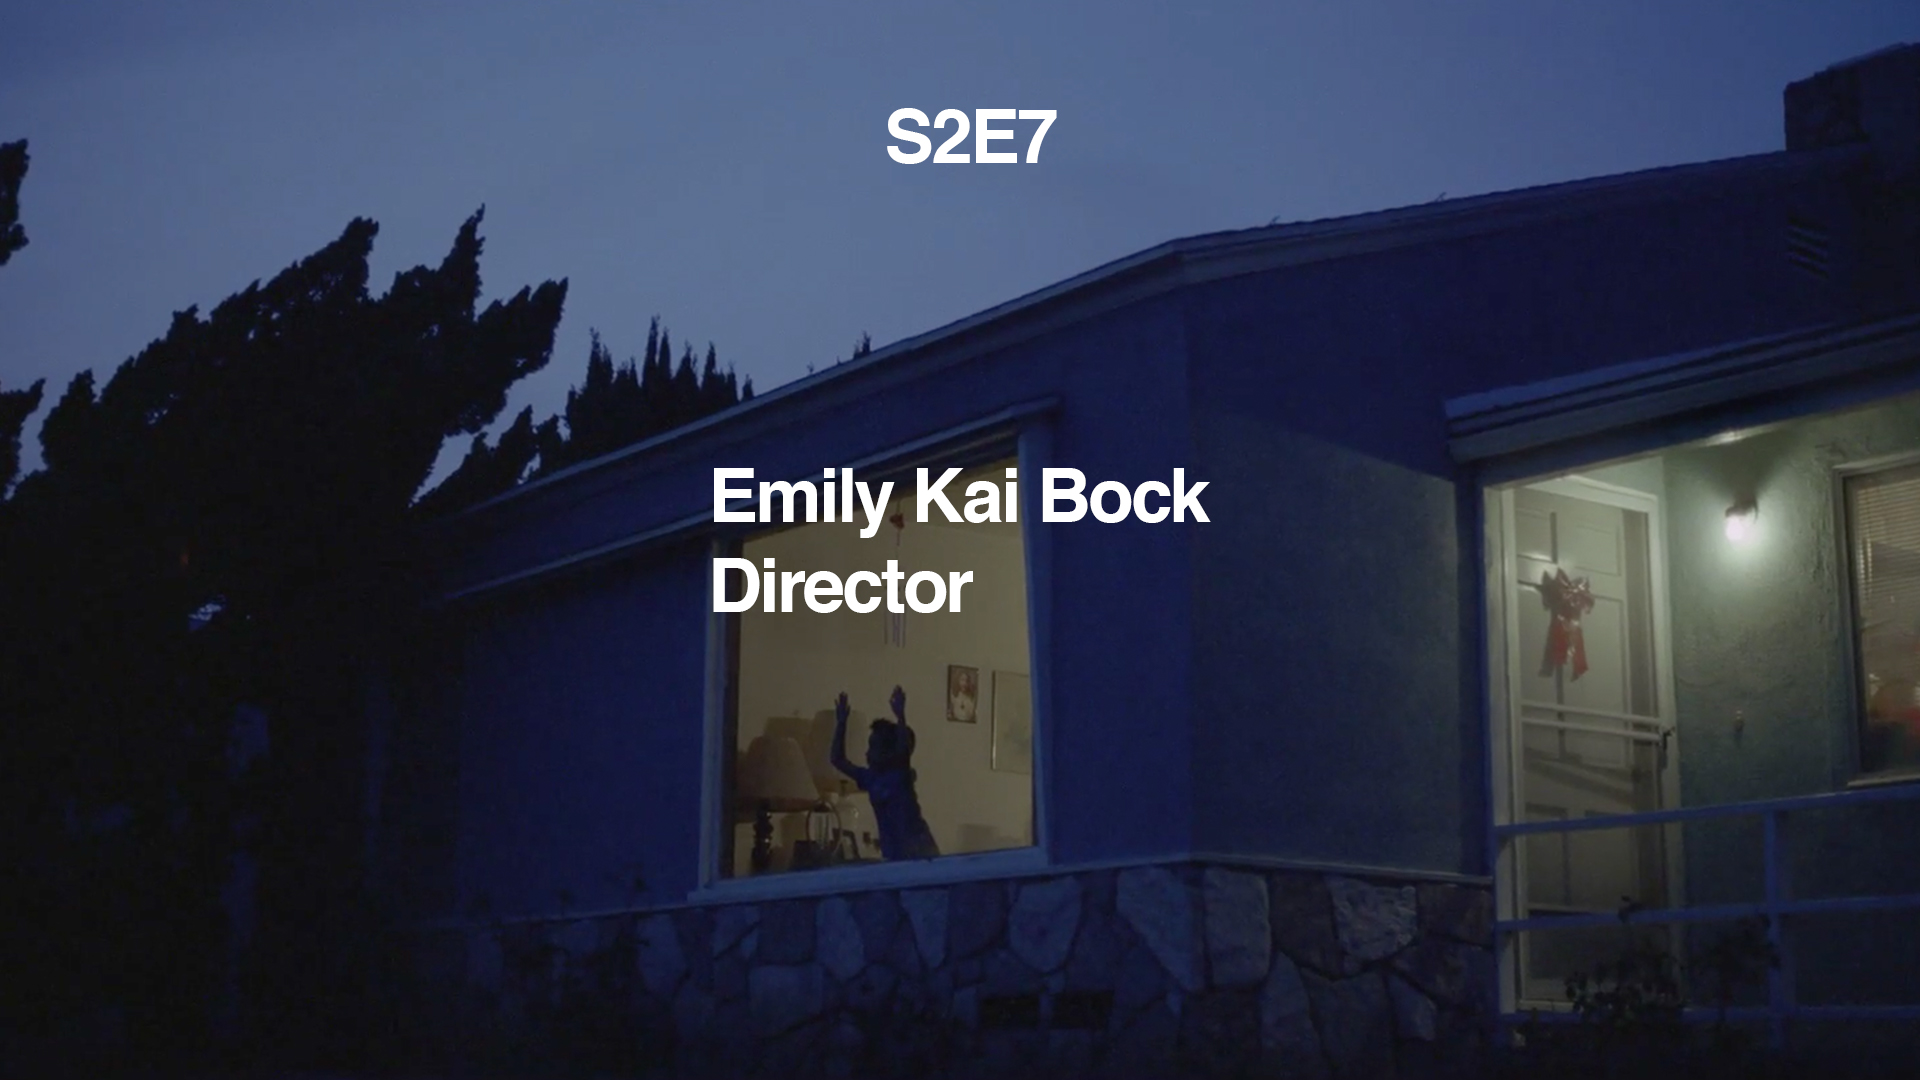 EMILY KAI BOCK